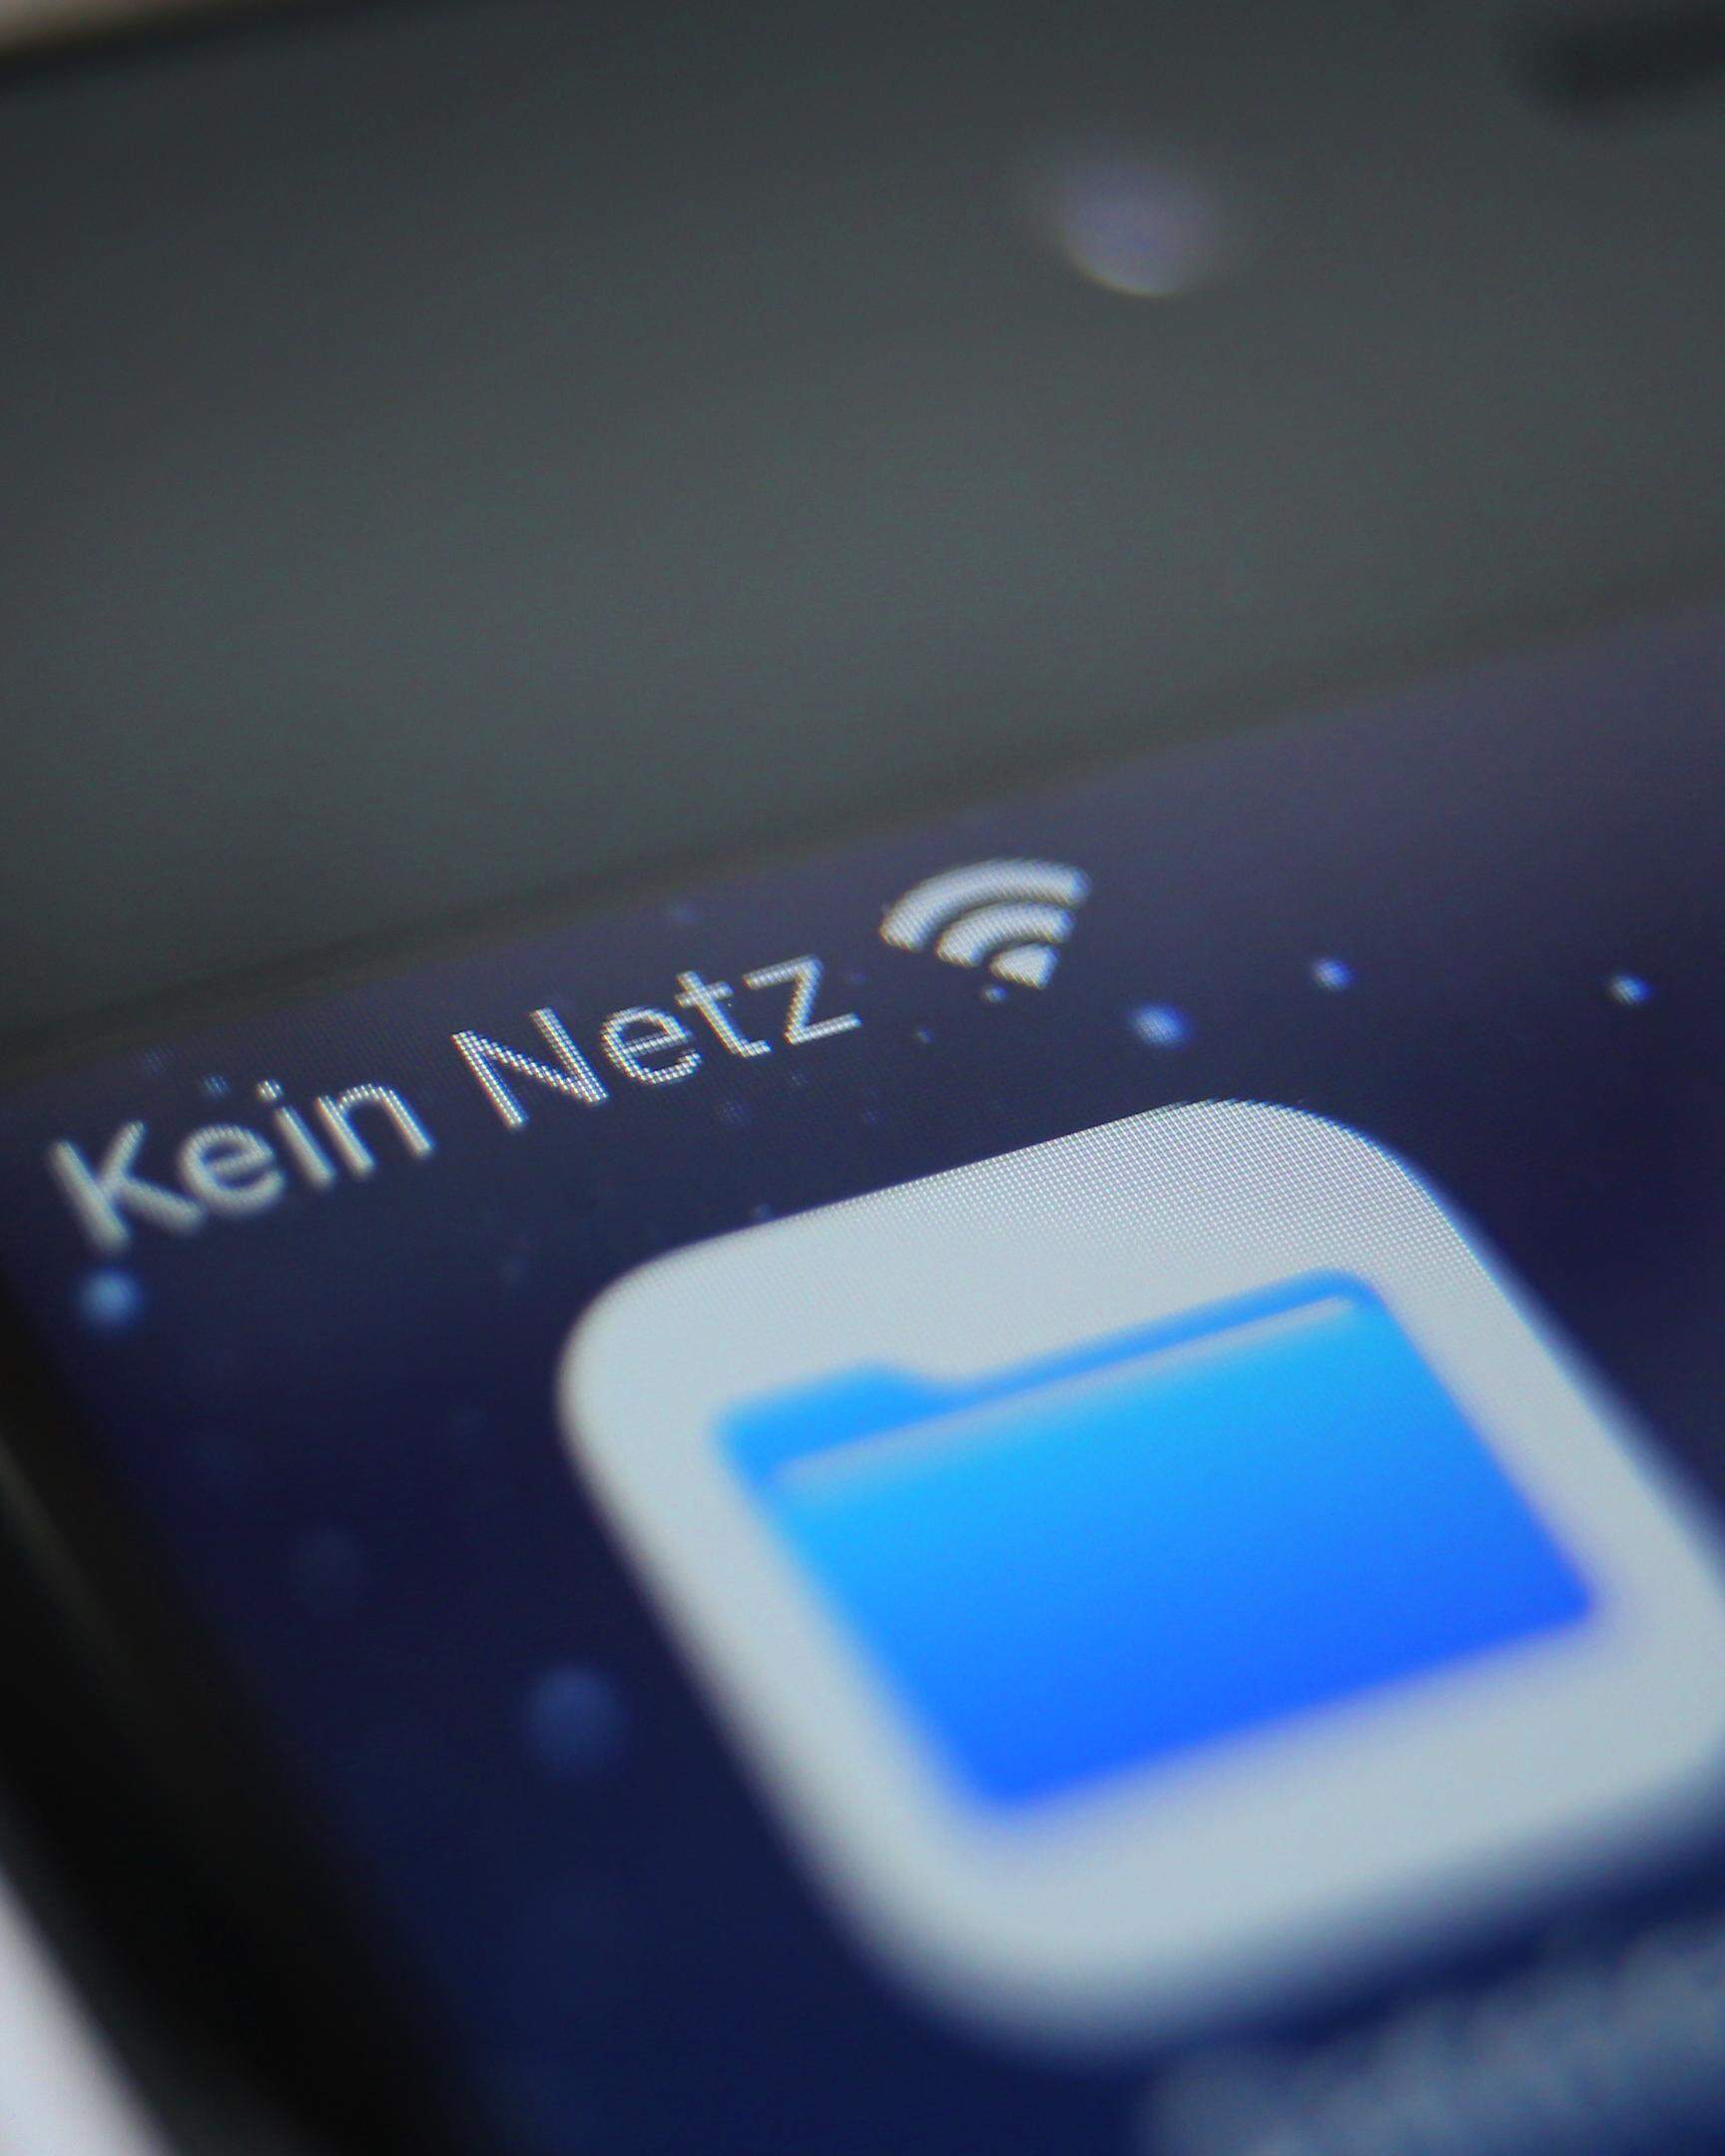 ARCHIV - 13.08.2020, Bayern, Kempten: Die Aufschrift «Kein Netz» ist auf dem Bildschirm eines Mobiltelefons zu sehen. (zu dpa "Funklöcher bleiben ein Ärgernis") Foto: Karl-Josef Hildenbrand/dpa +++ dpa-Bildfunk +++